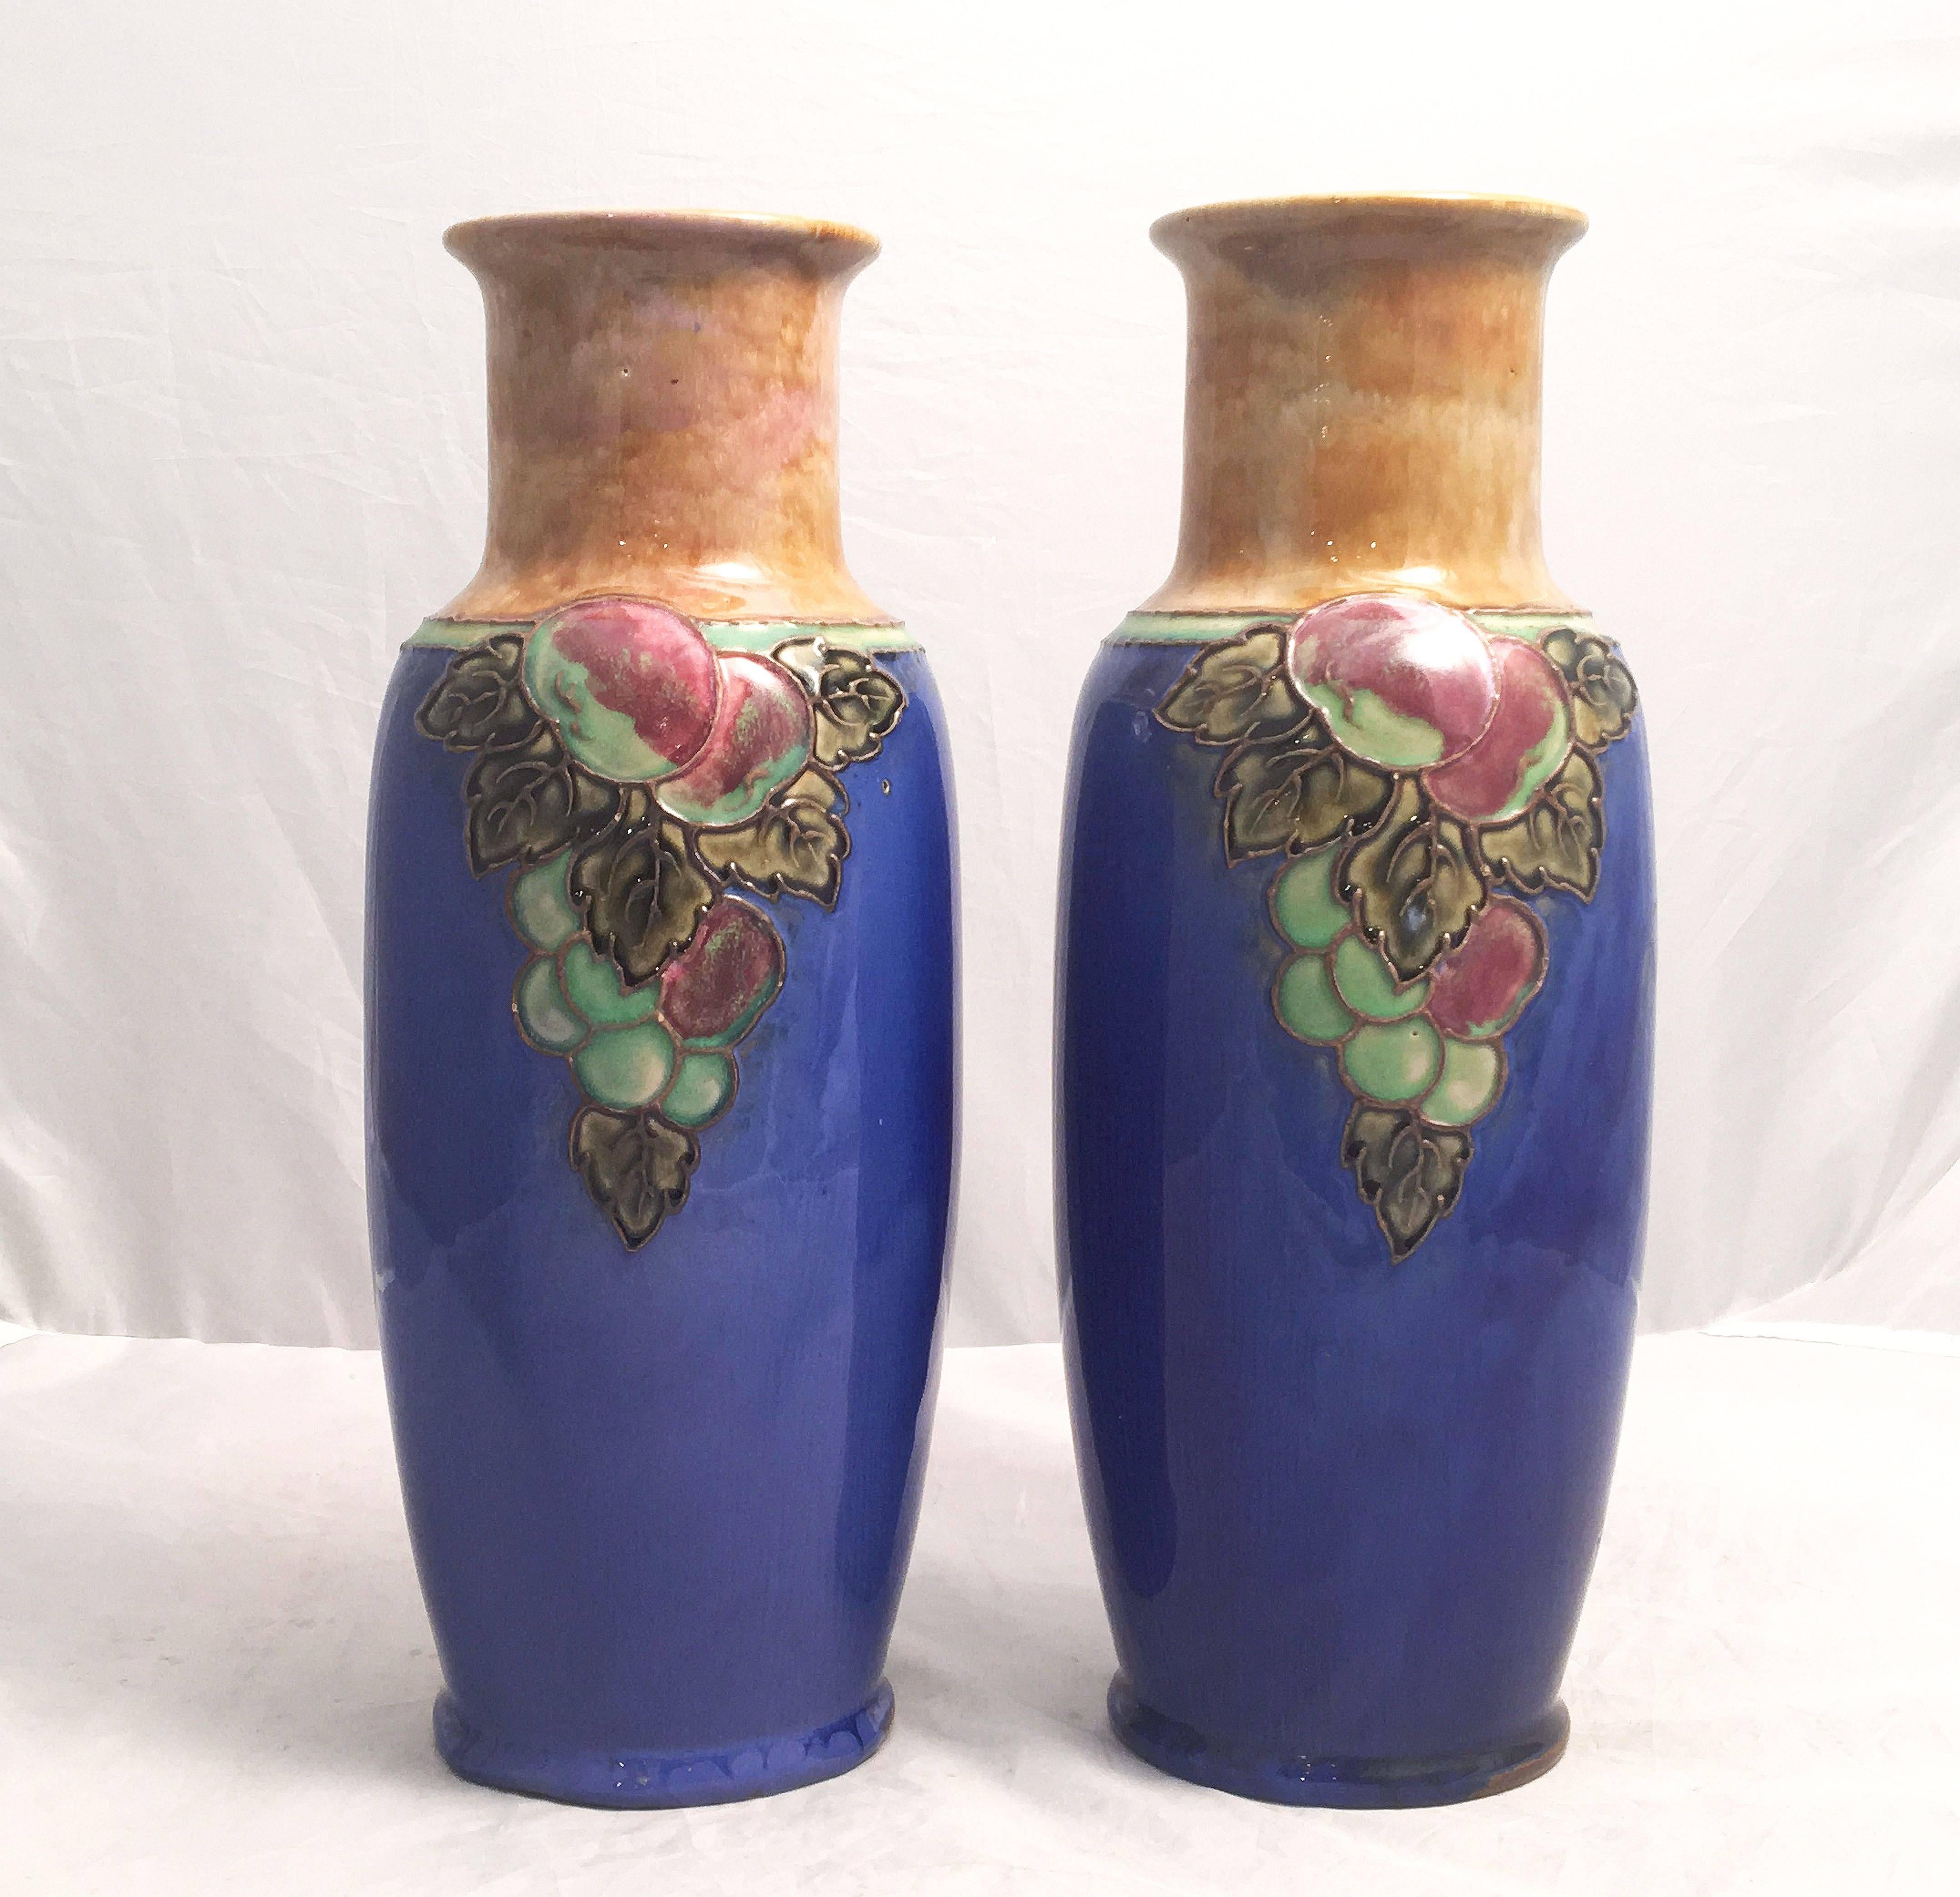 Une belle paire de vases décoratifs en céramique de la période Arts & Crafts, par la célèbre entreprise de poterie anglaise, Royal Doulton.

Chaque vase présente un motif de grappes de raisin sur le pourtour. Marque imprimée à la base.

Deux